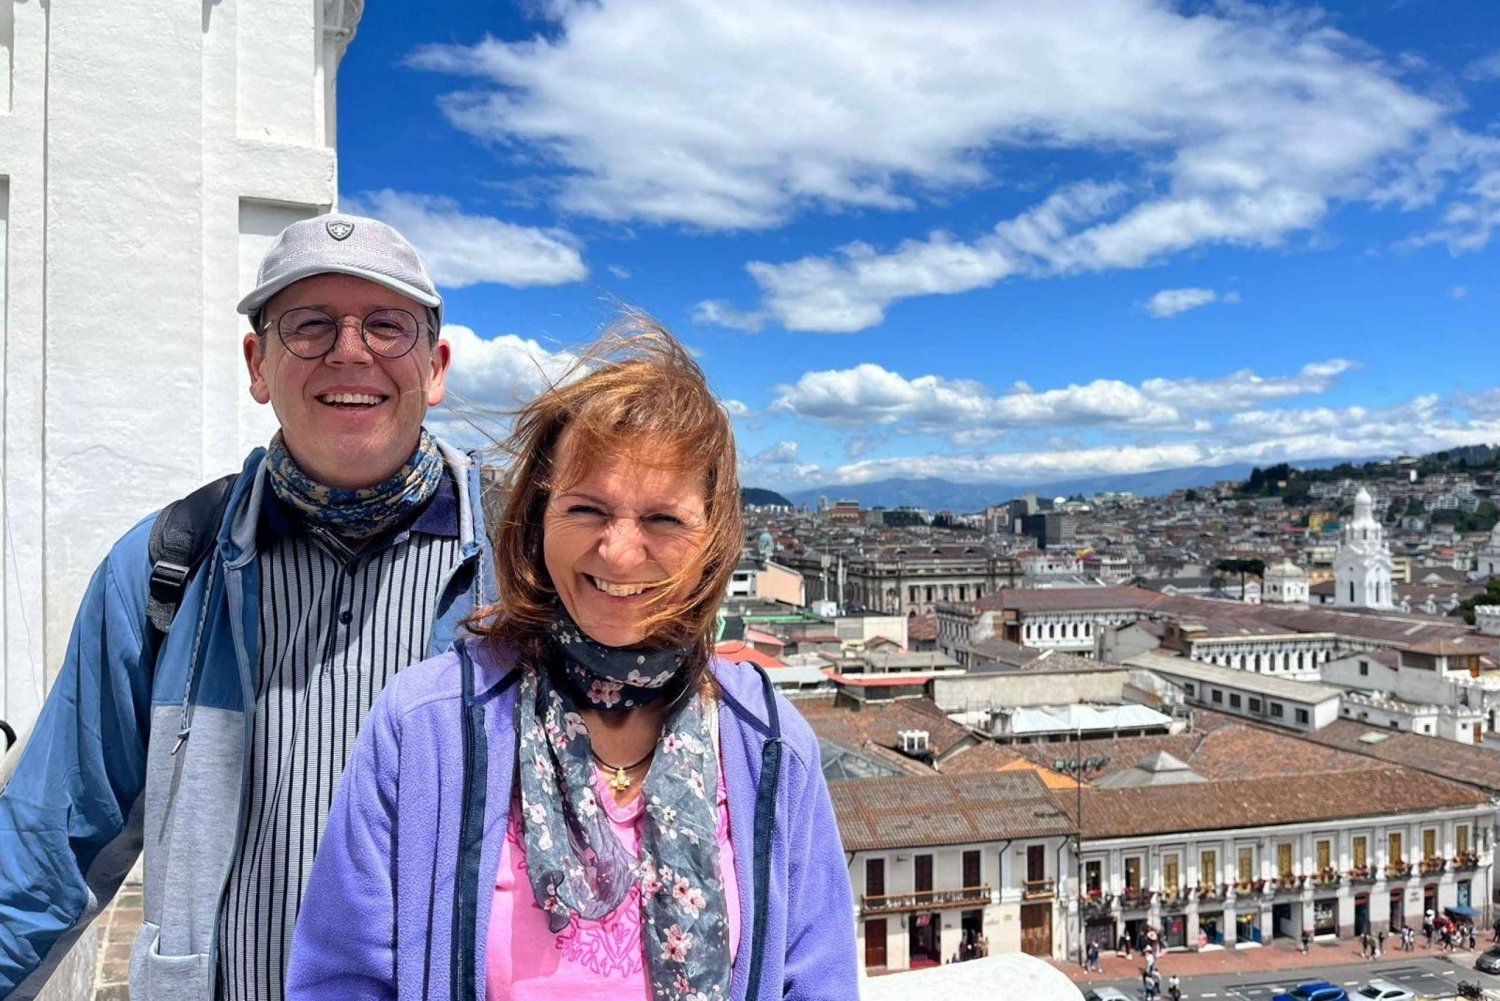 Quito: Wandeltour door de oude stad met bezoek aan de Basiliekkerk